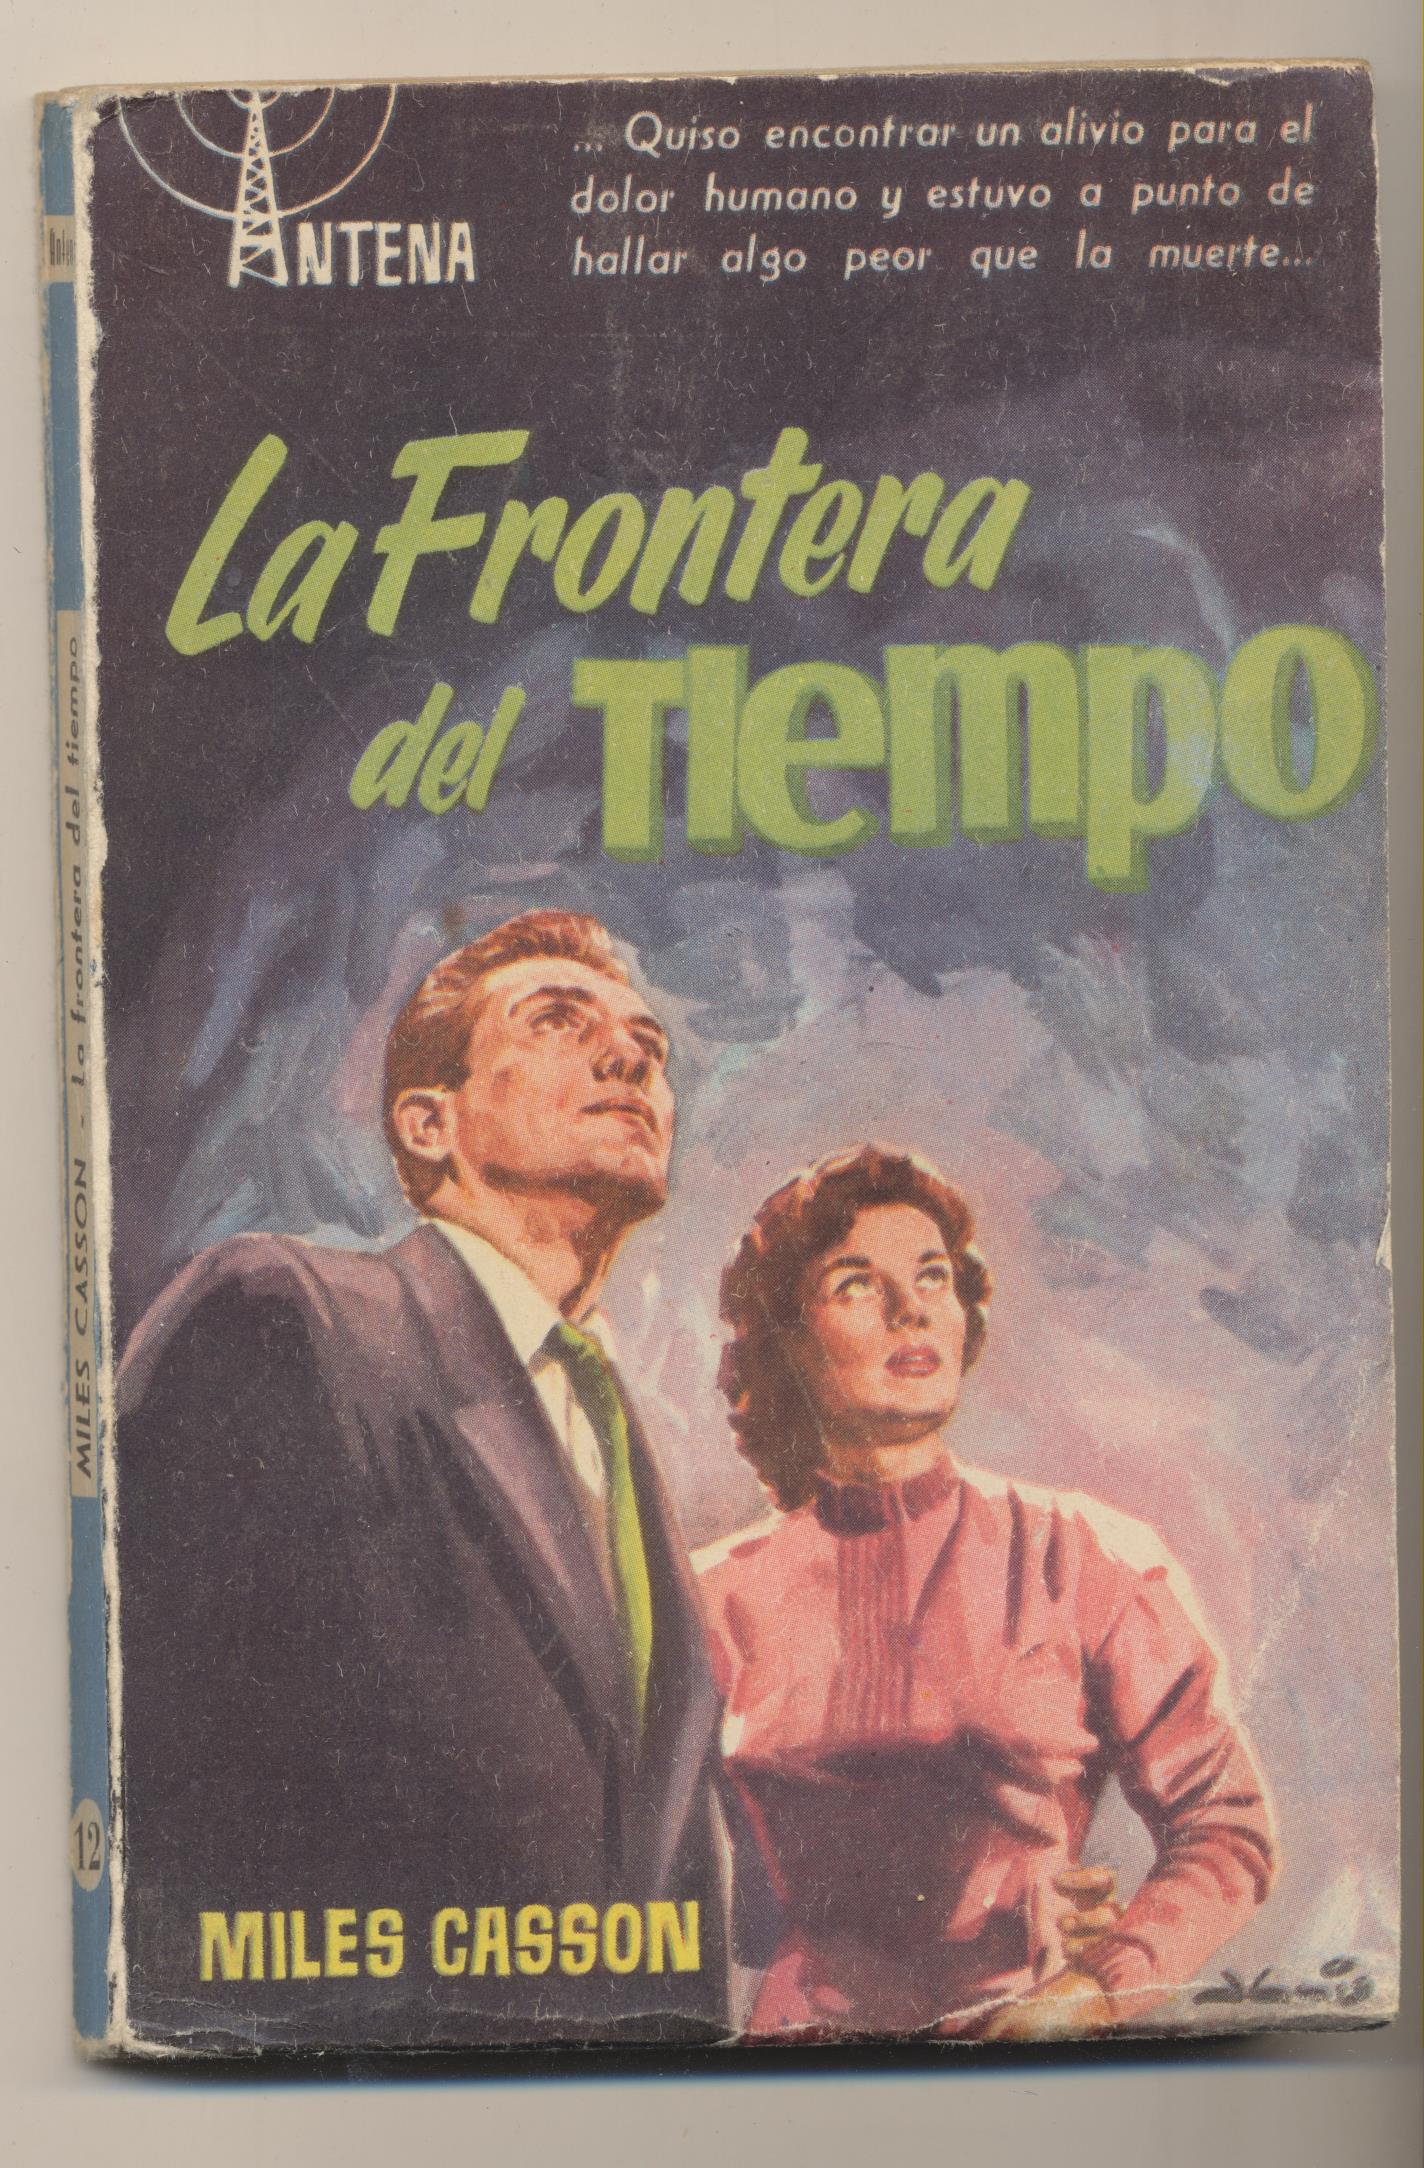 Colección Antena nº 12. Miles Gasson. la Frontera del tiempo. 1ª Edición Cid 1957